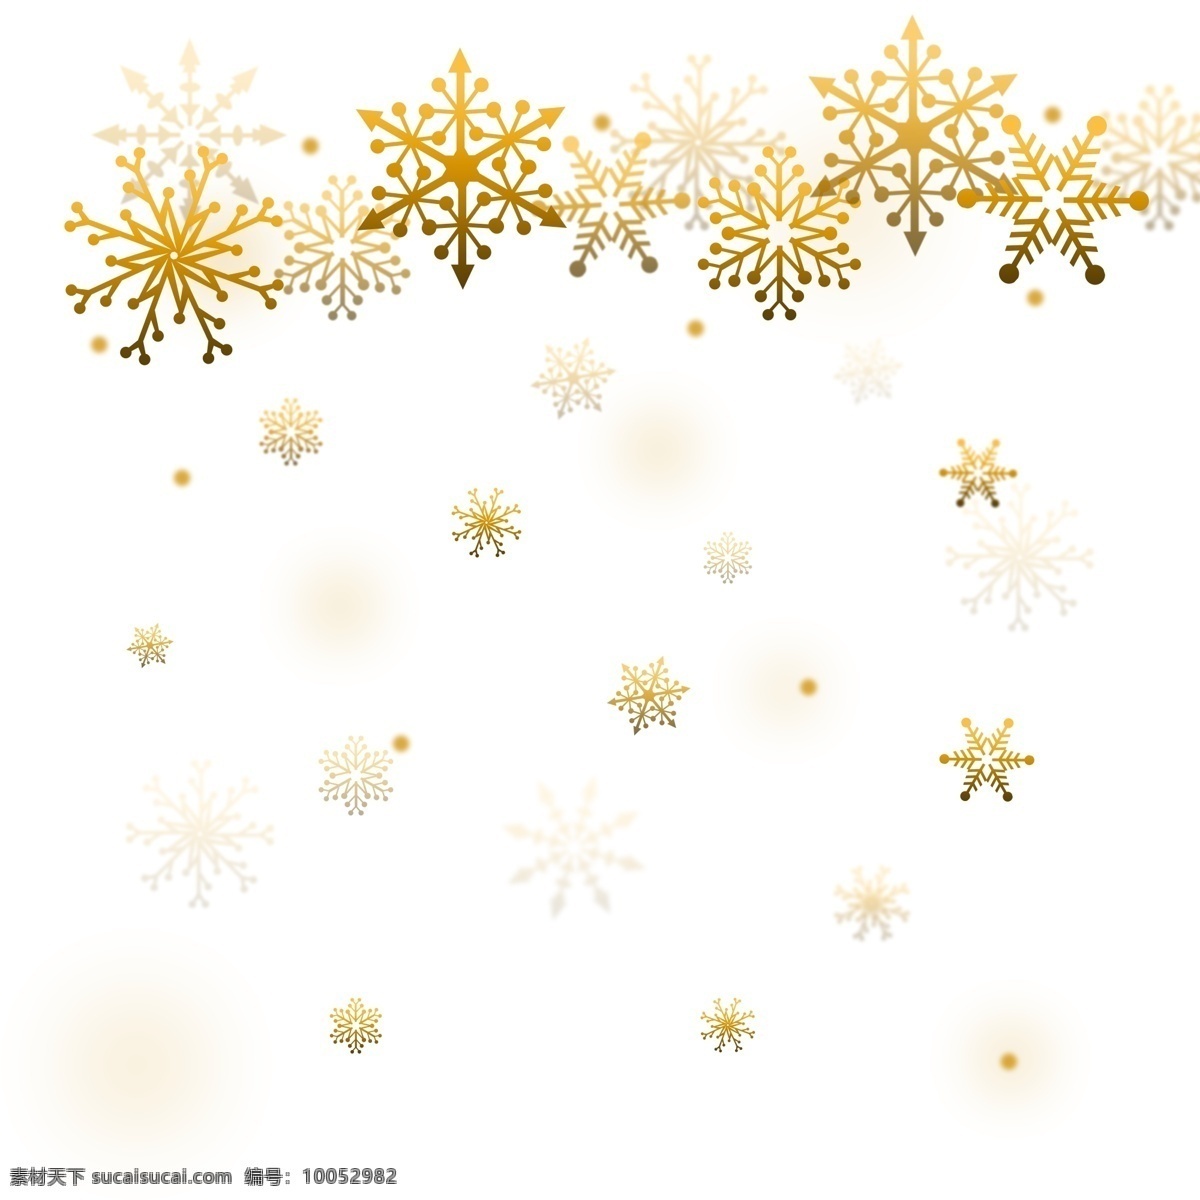 唯美 金色 飘浮 雪花 圣诞节 春节 冬季 装饰 图案 过年 飘落的雪花 年味 装饰图案 金色雪花 雪 飘浮素材 雪花飘浮